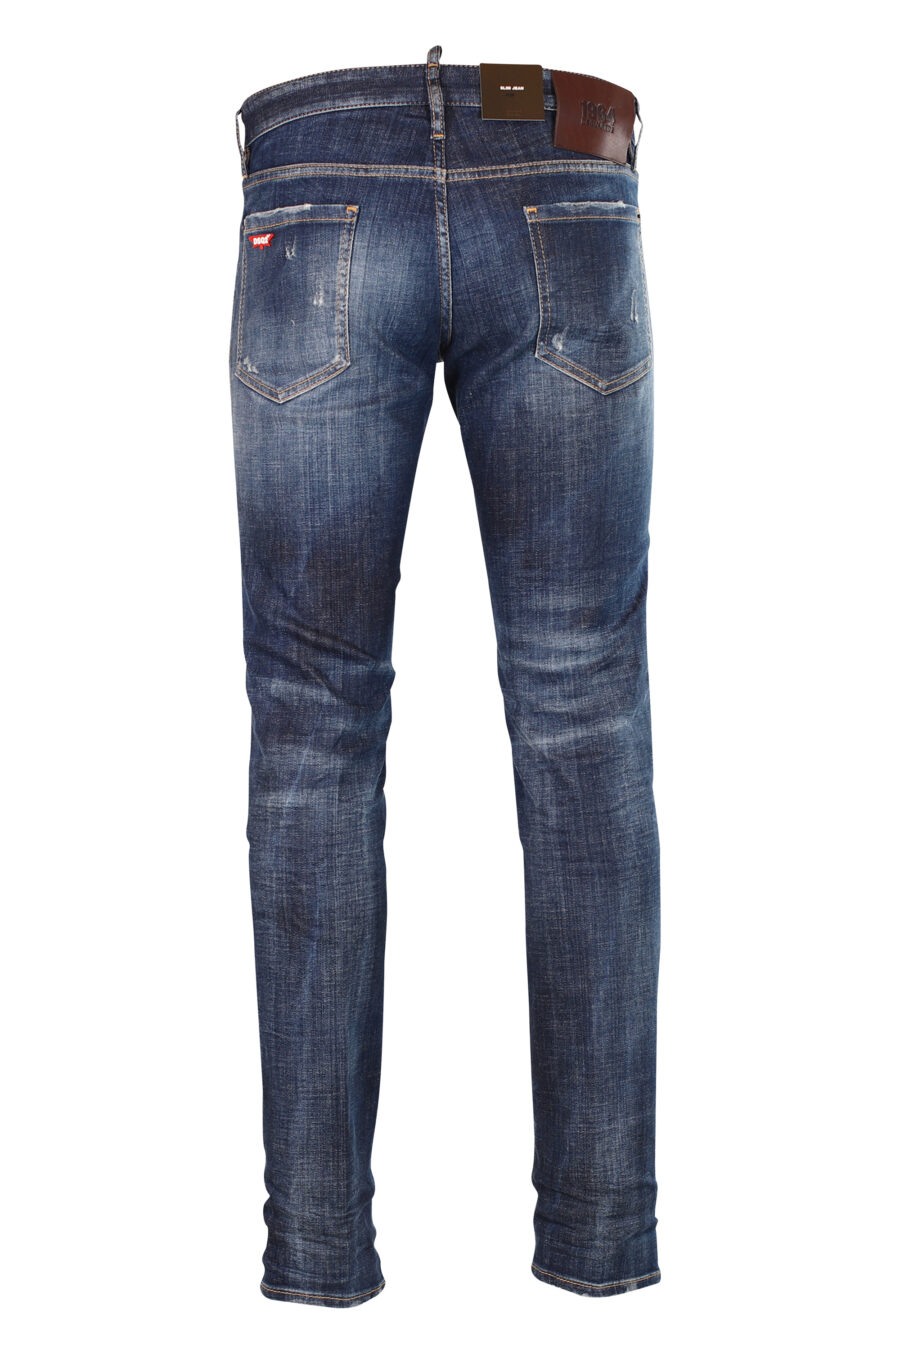 Schlanke Jeans "Slim jean" blau halb ausgefranst mit Rissen - 8052134942789 2